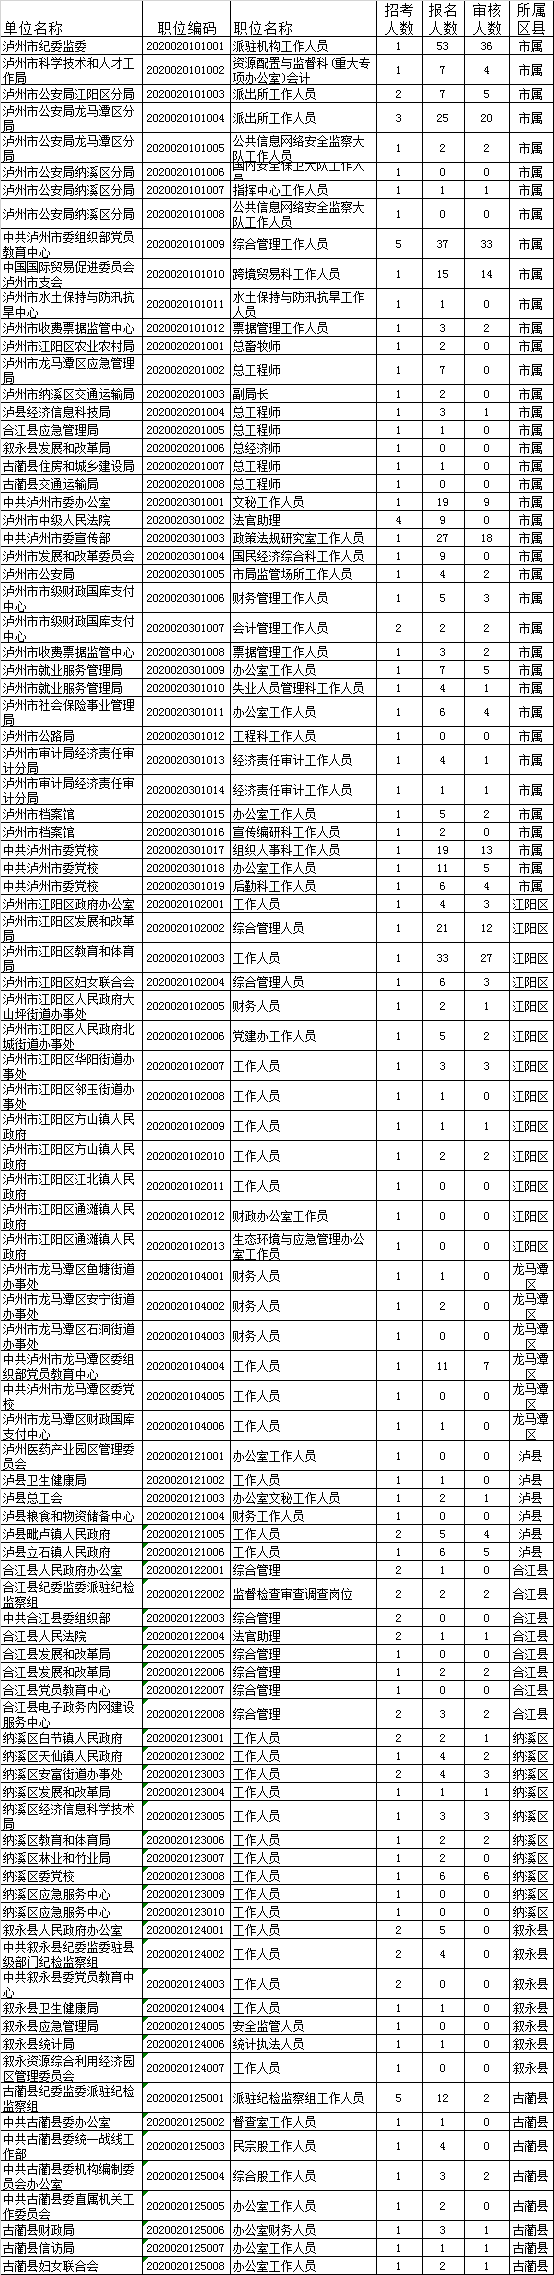 泸州市遴选报名统计表.png